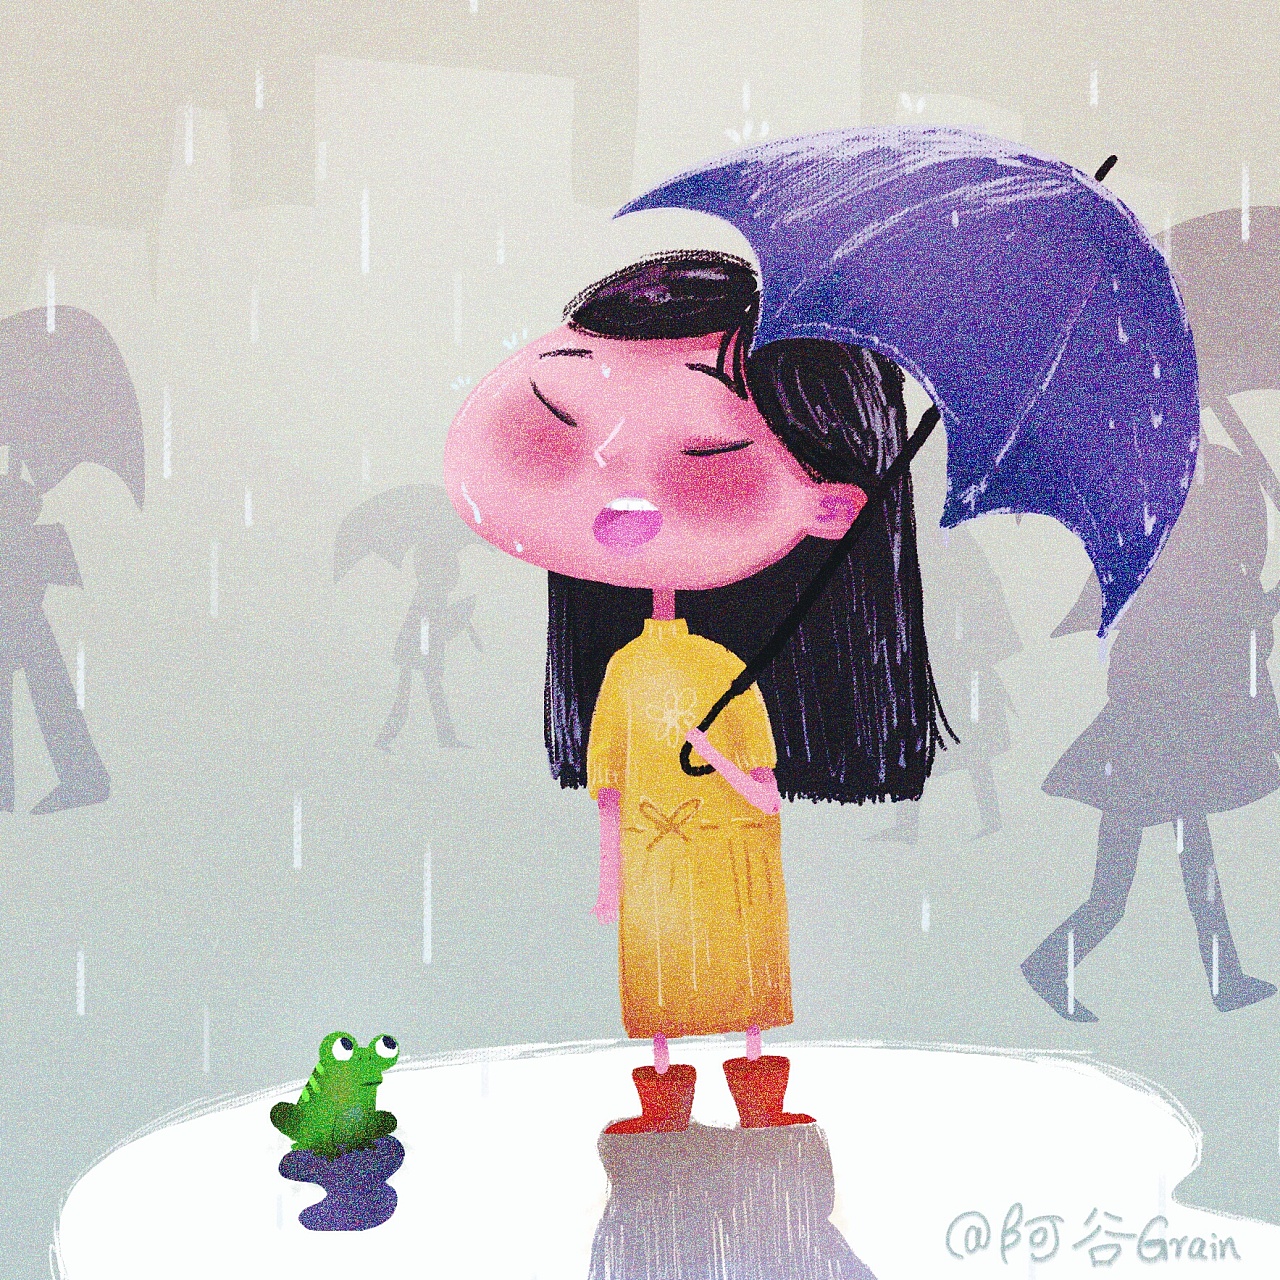 哪些日本动画有下雨场景，夕阳？-哪些动漫有一个人淋雨的场景，急求！！！